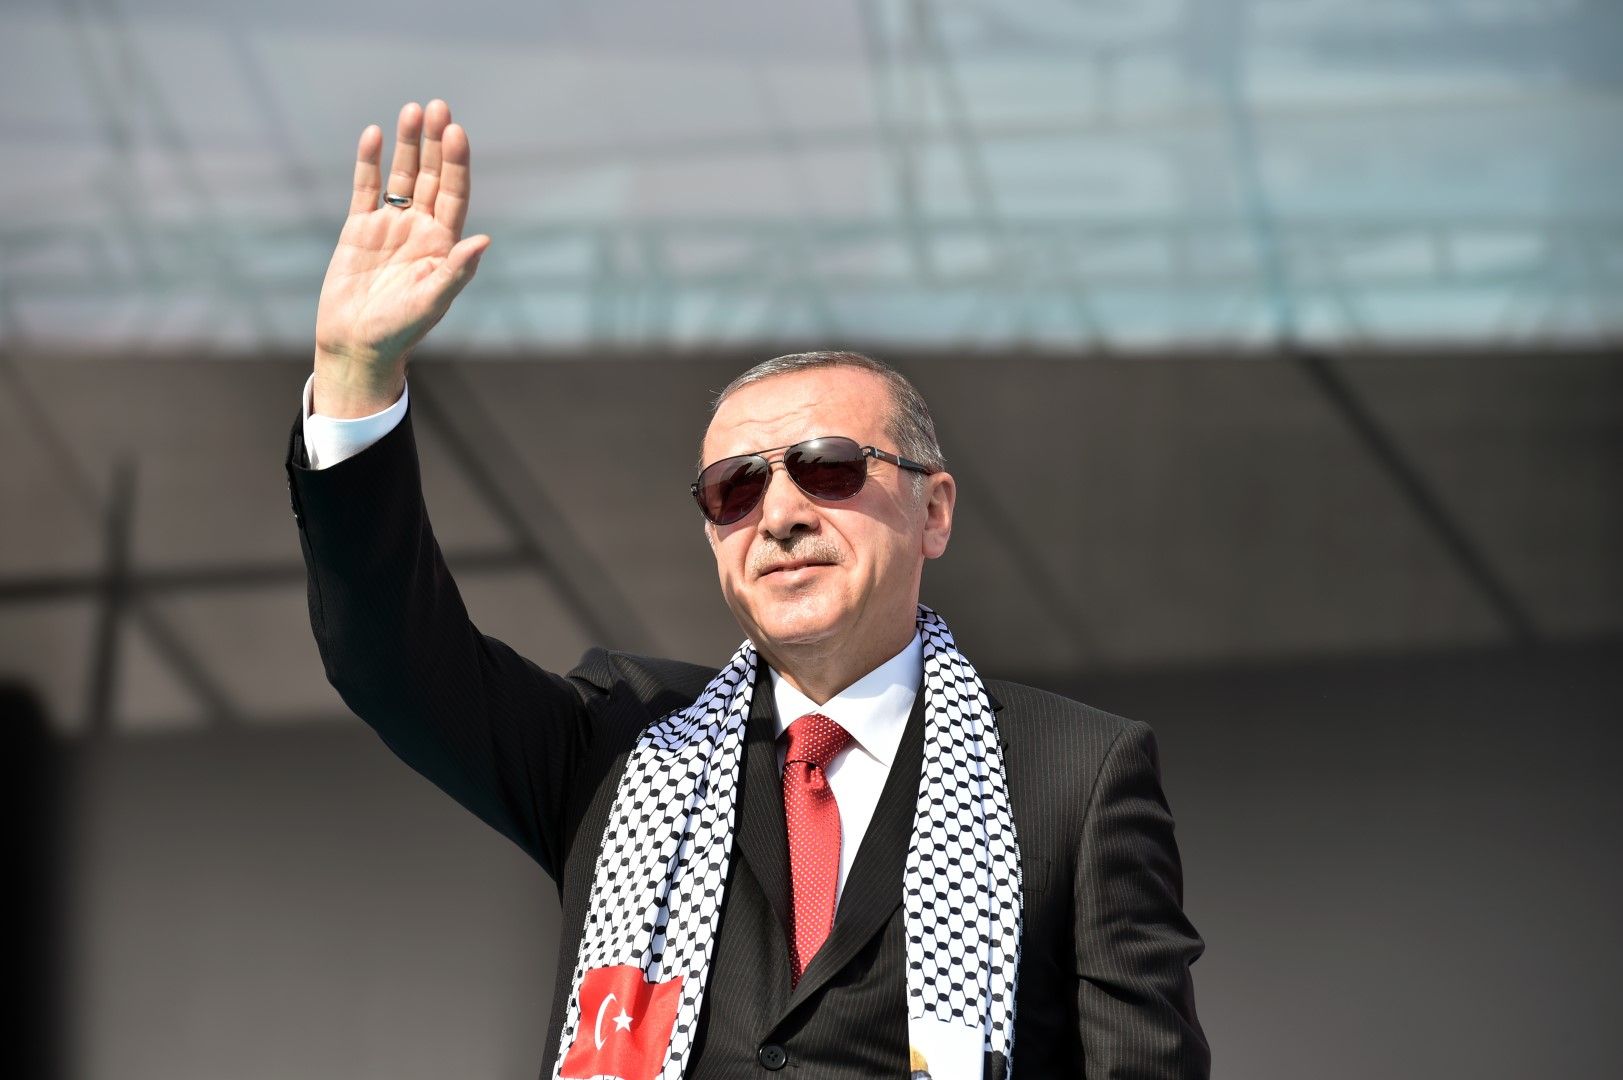 Ердоган спечели изборите за президент, но го чака сложна финансова ситуация в страната